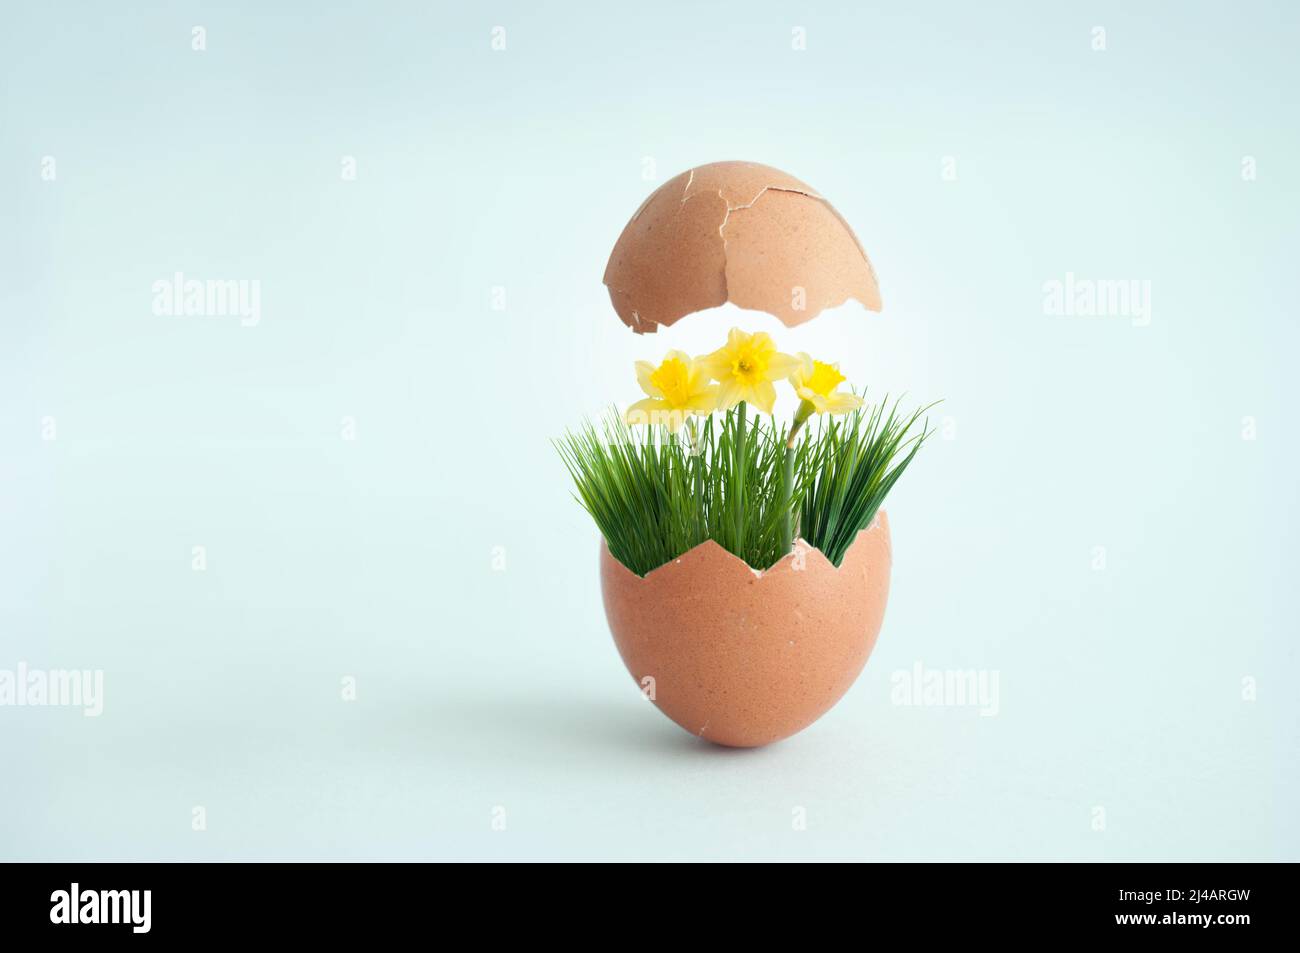 Huevo roto con la parte superior que revela hierba de primavera con narcisos, concepto de primavera de pascua Foto de stock